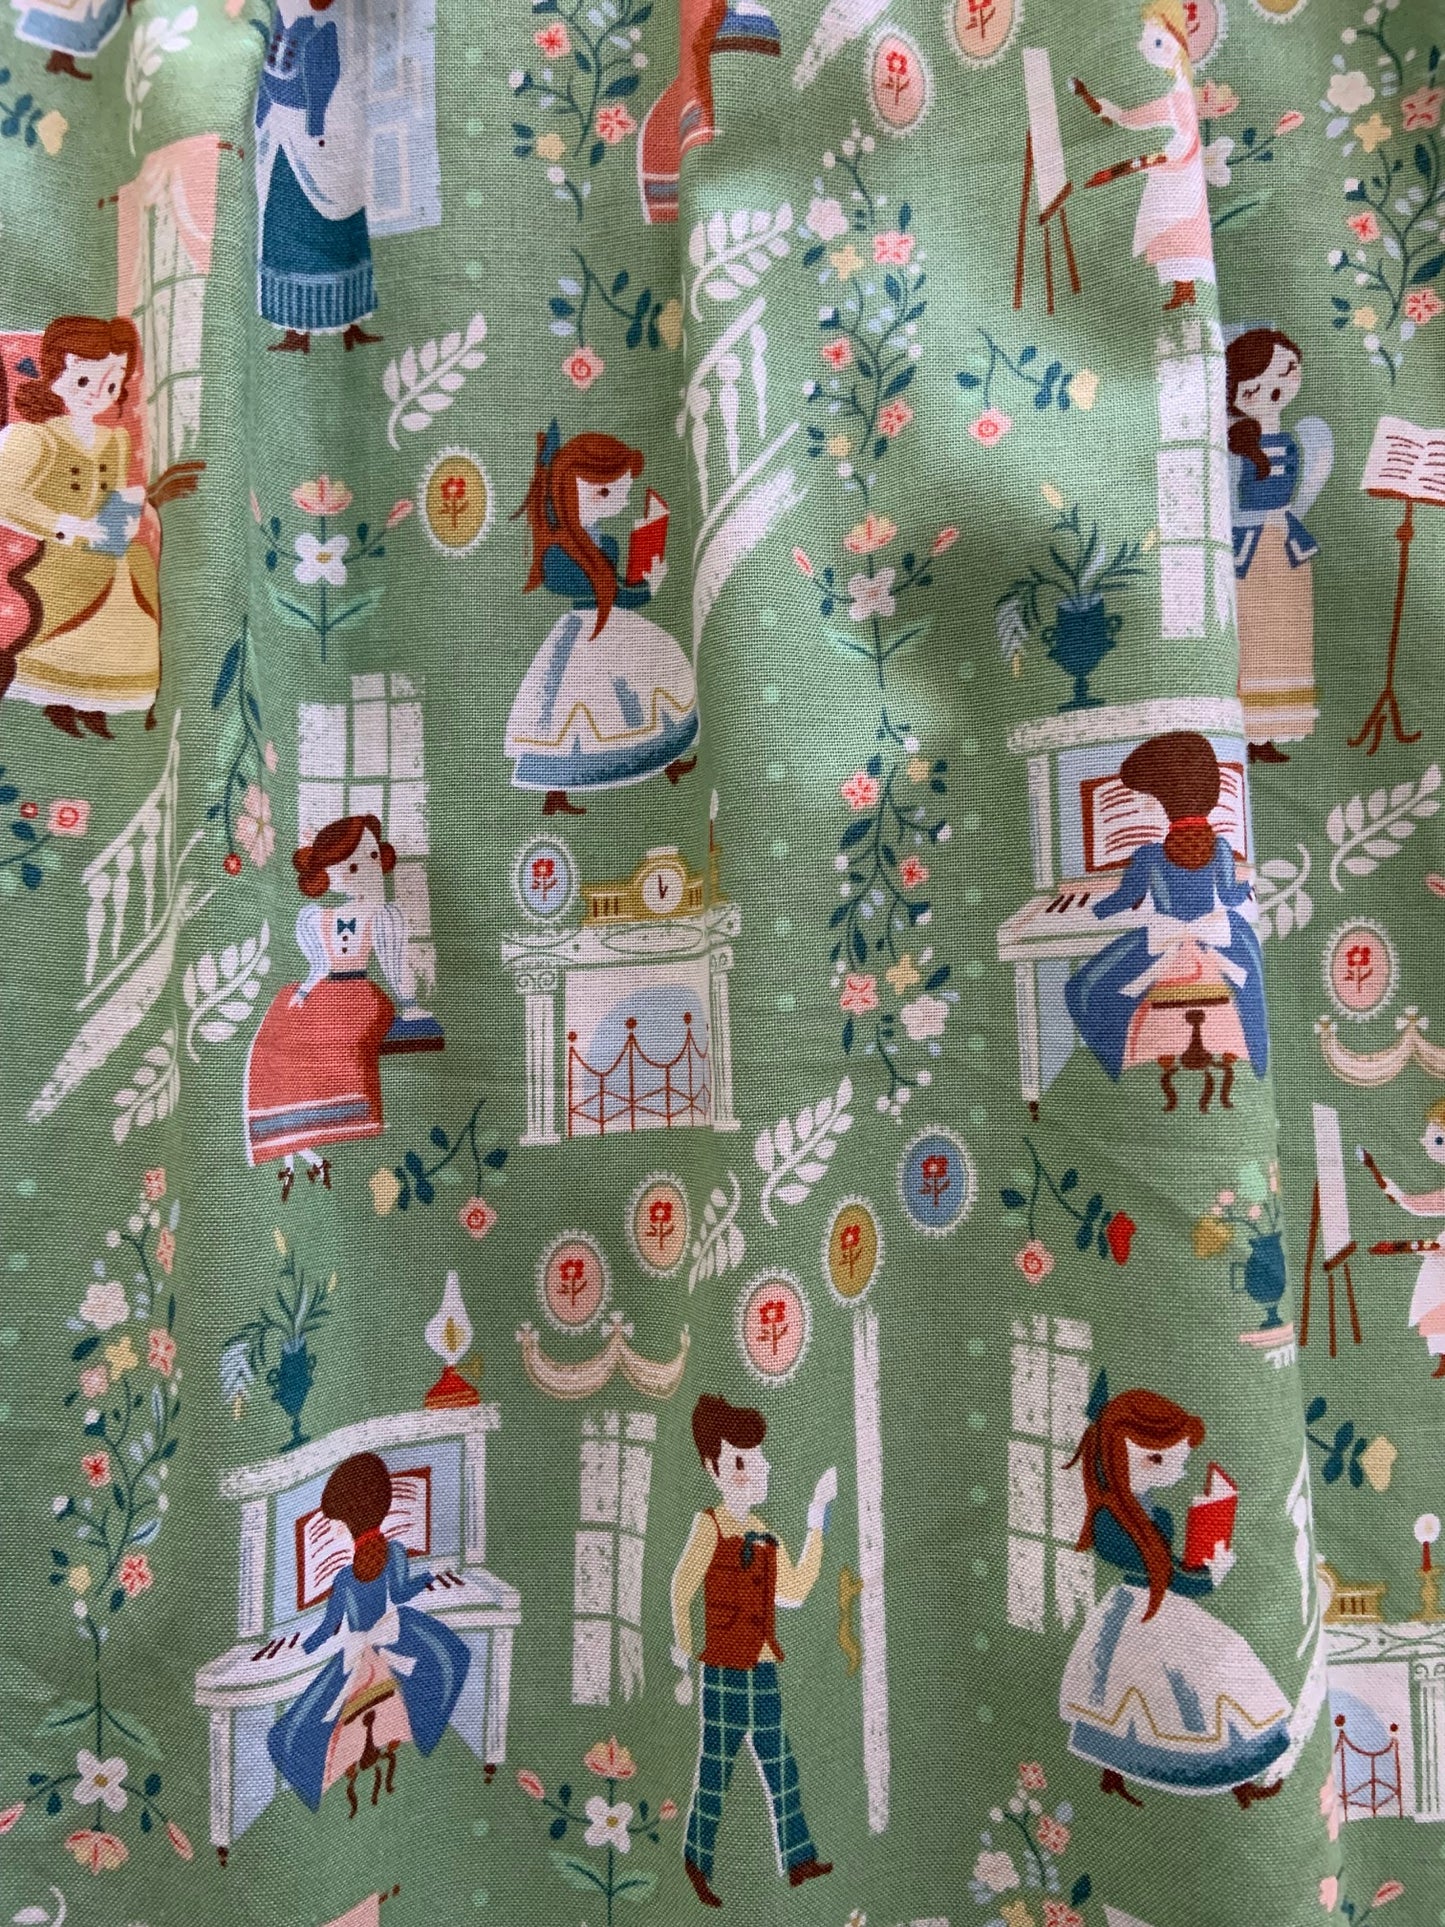 a close up of fabric of little women dress